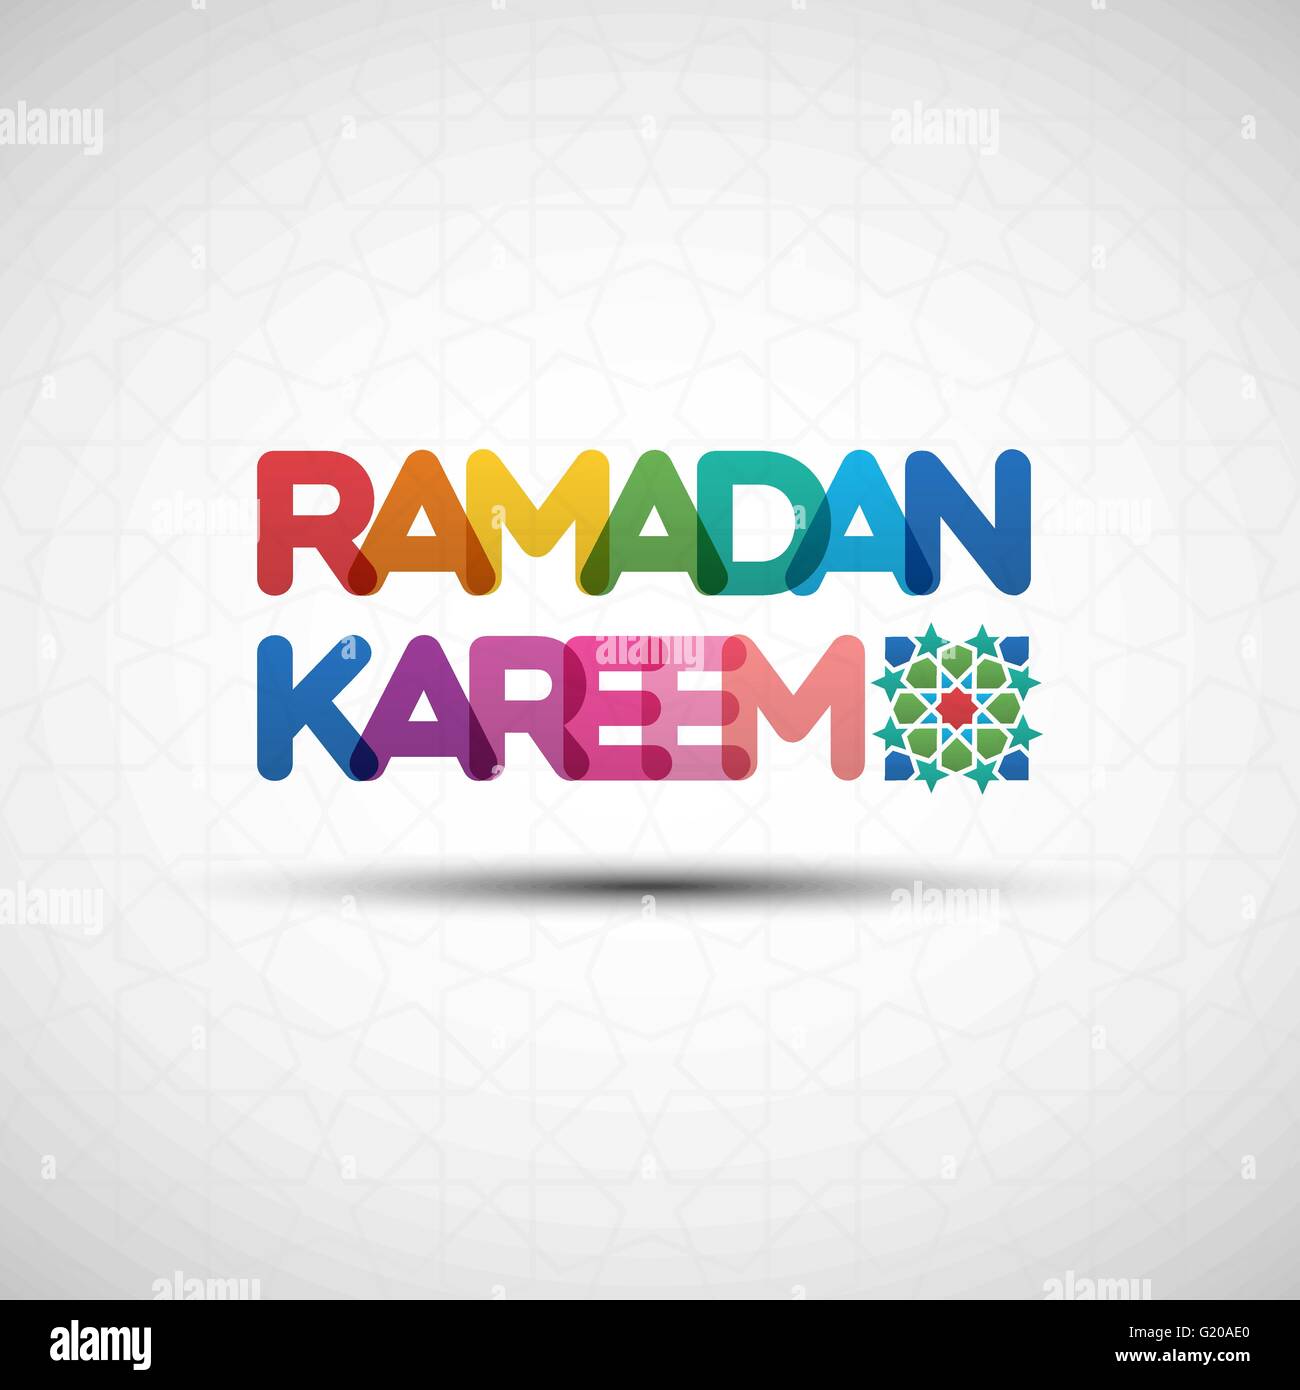 Vector Illustration des Ramadan Kareem auf nahtlose Muster. Grußkarte Design mit kreativen bunten transparenten Text für Stock Vektor